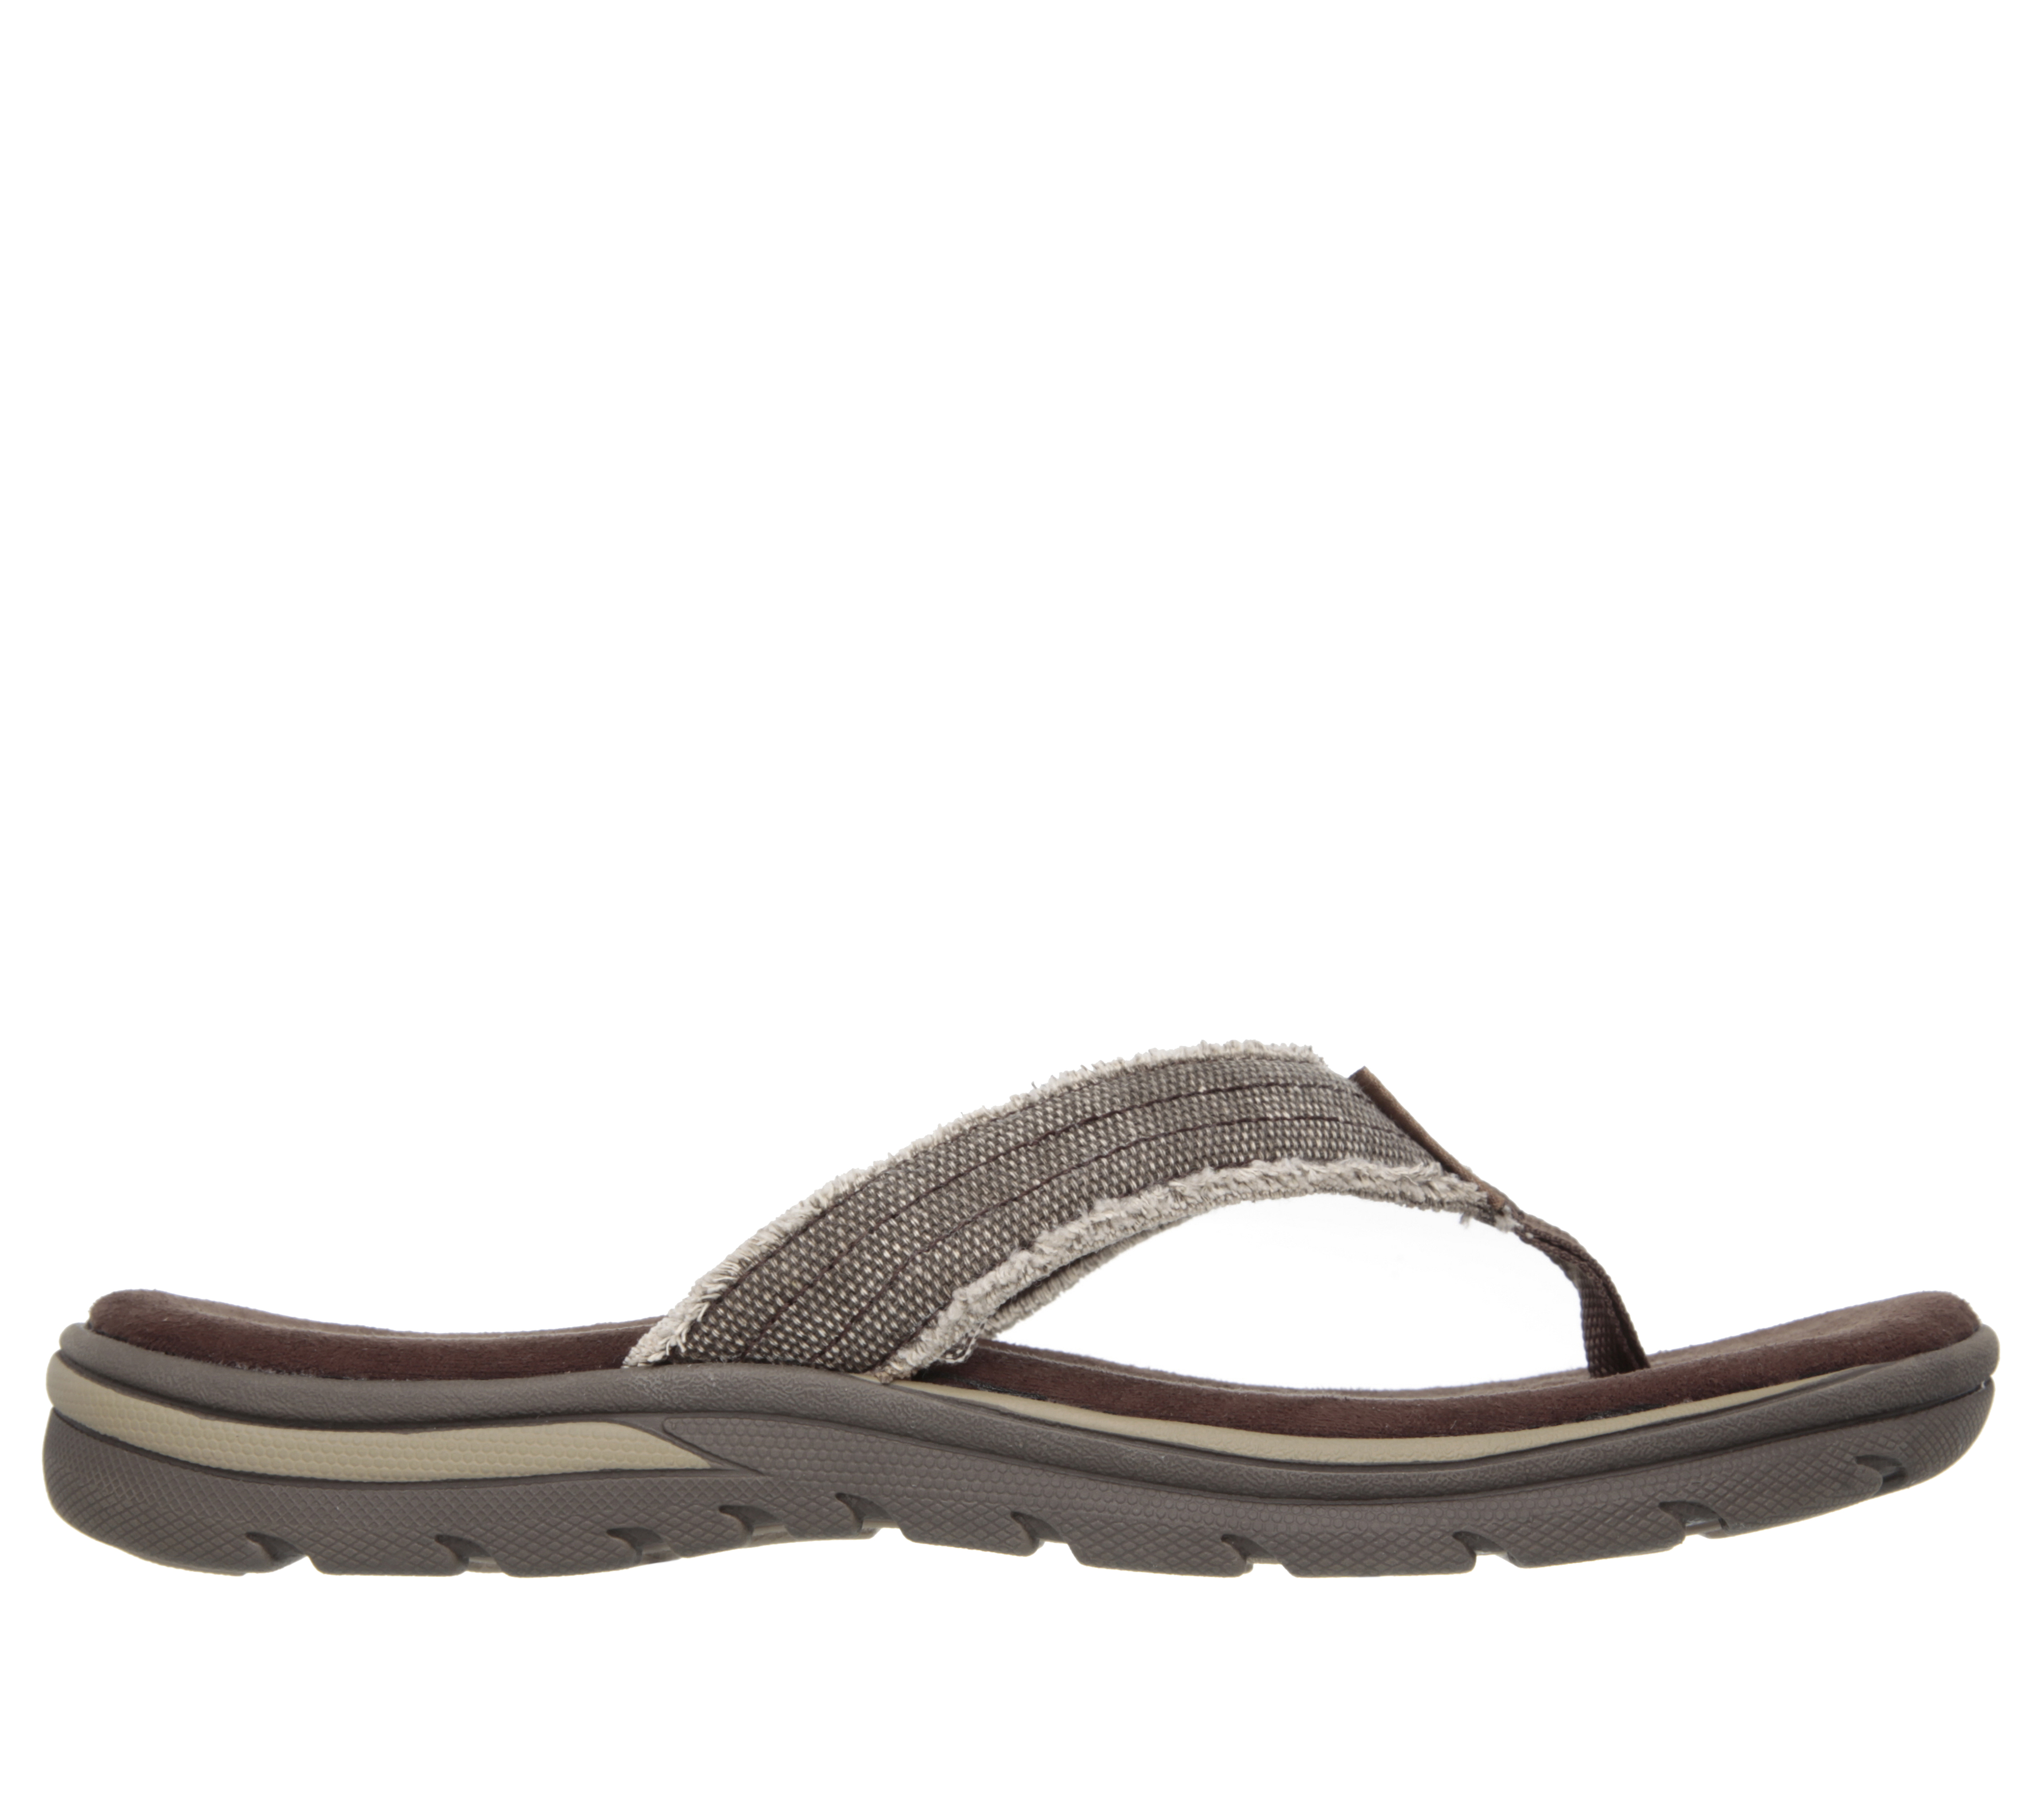 skechers sandals and flip flops